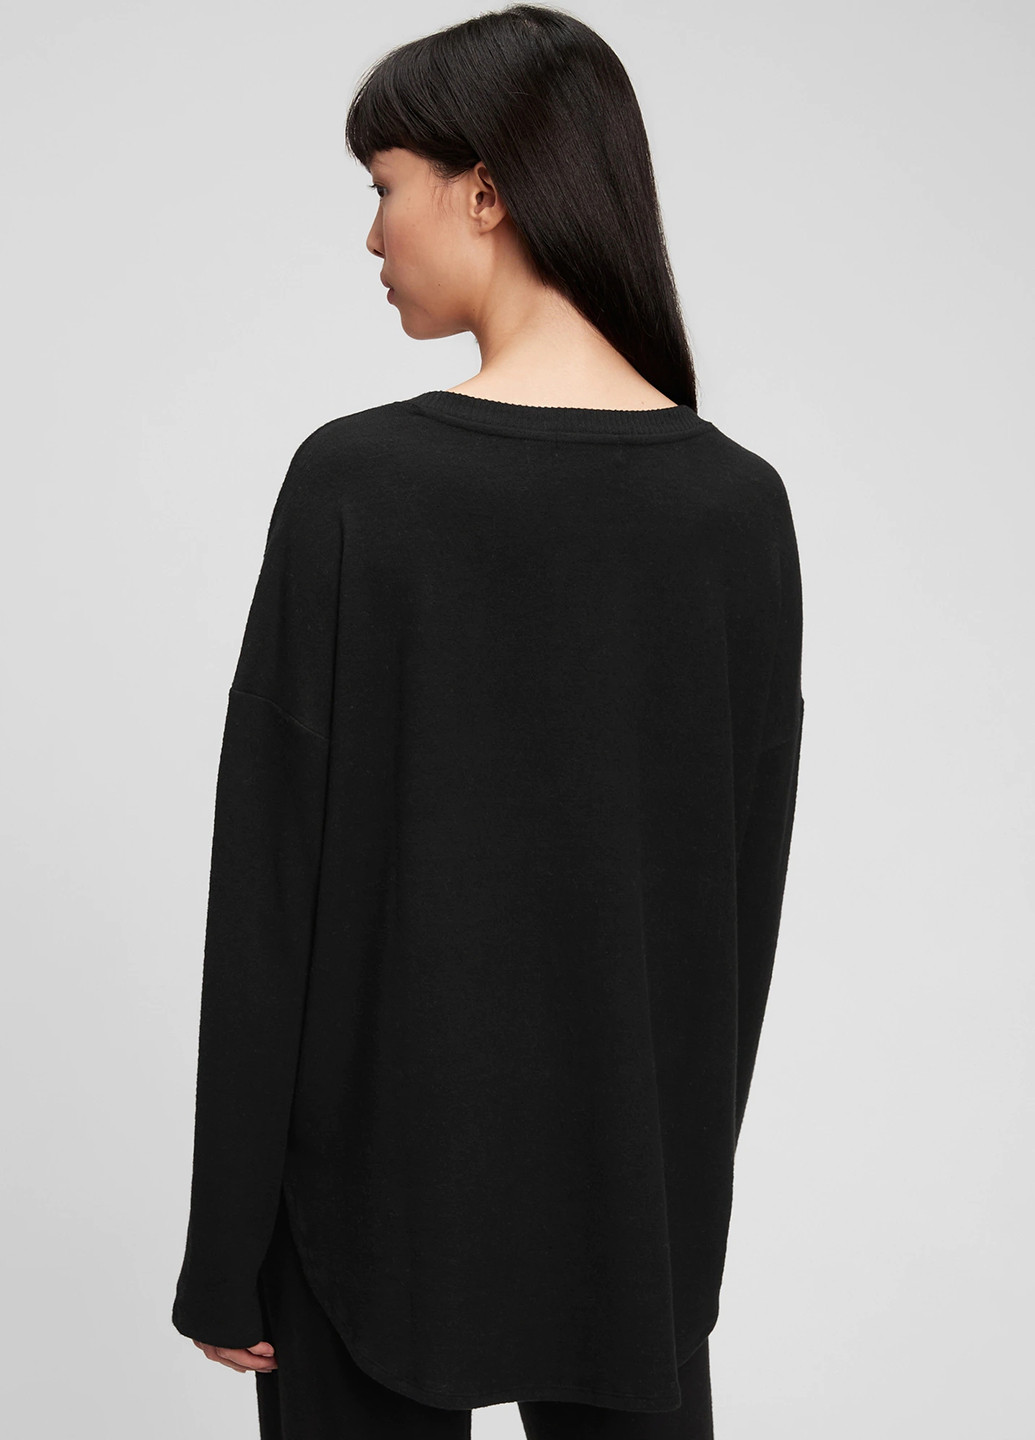 Черный демисезонный пуловер пуловер Gap